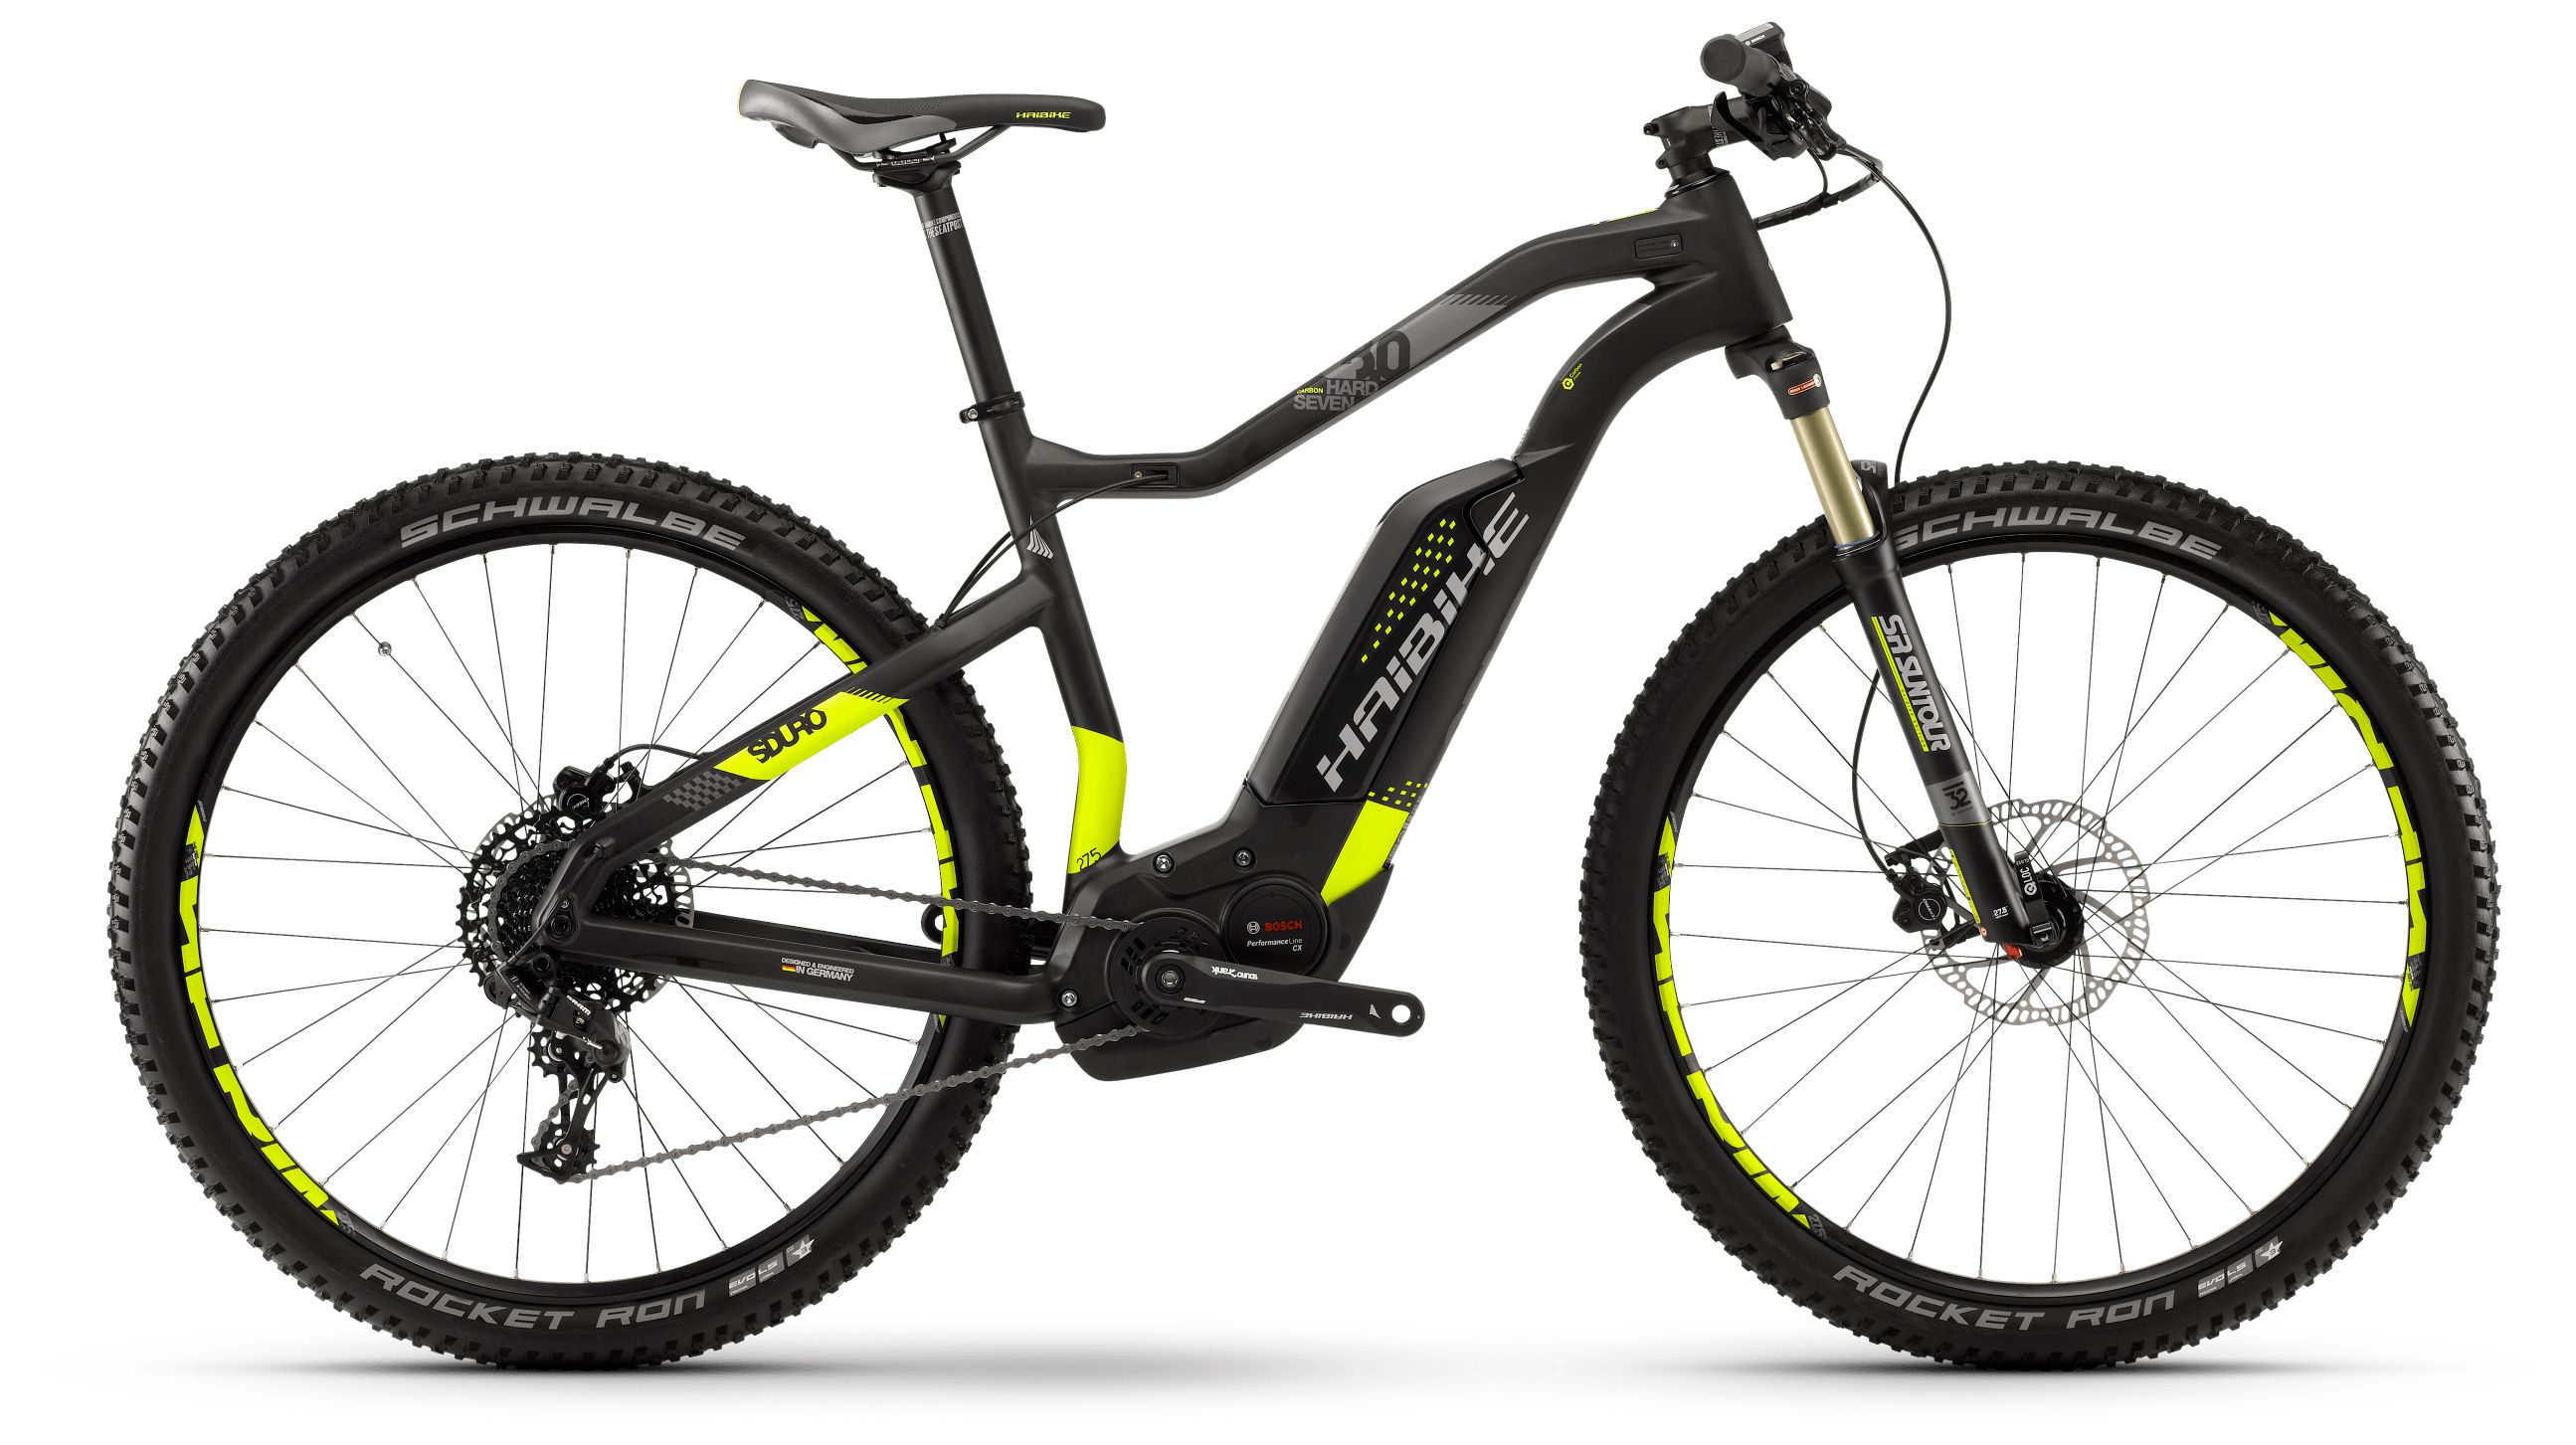  Отзывы о Горном велосипеде Haibike Sduro HardSeven Carbon 8.0 500Wh 11s NX 2018